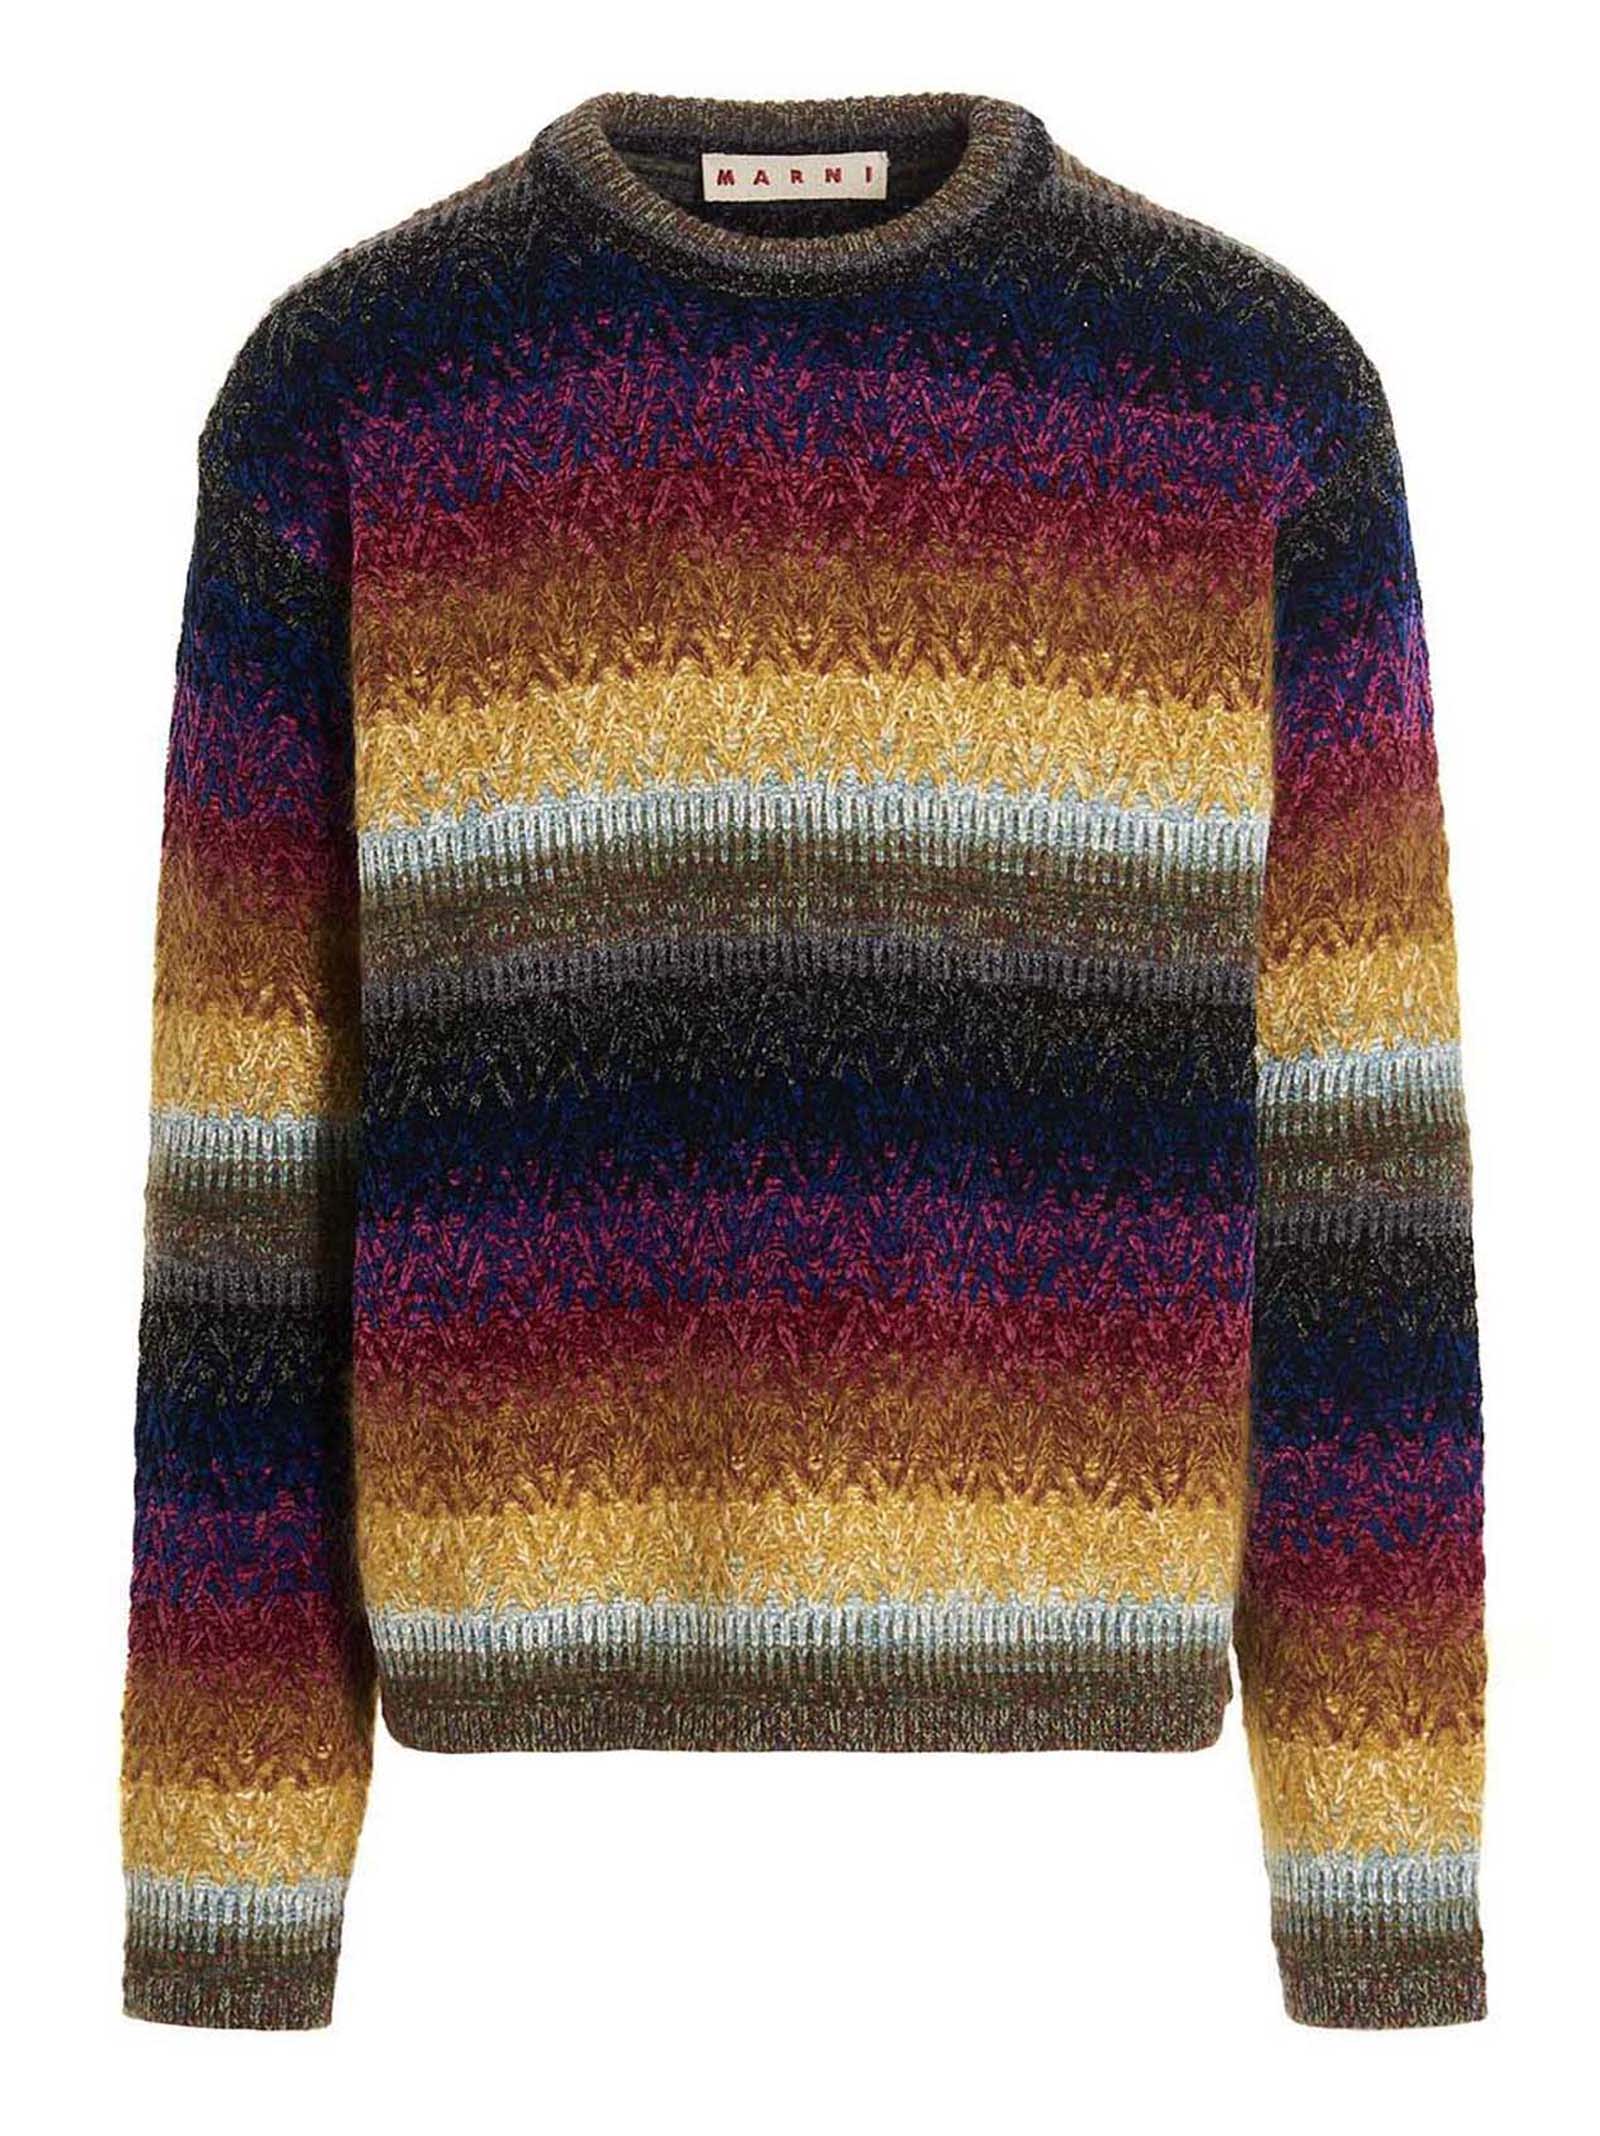 Marni Multicolor Sweater